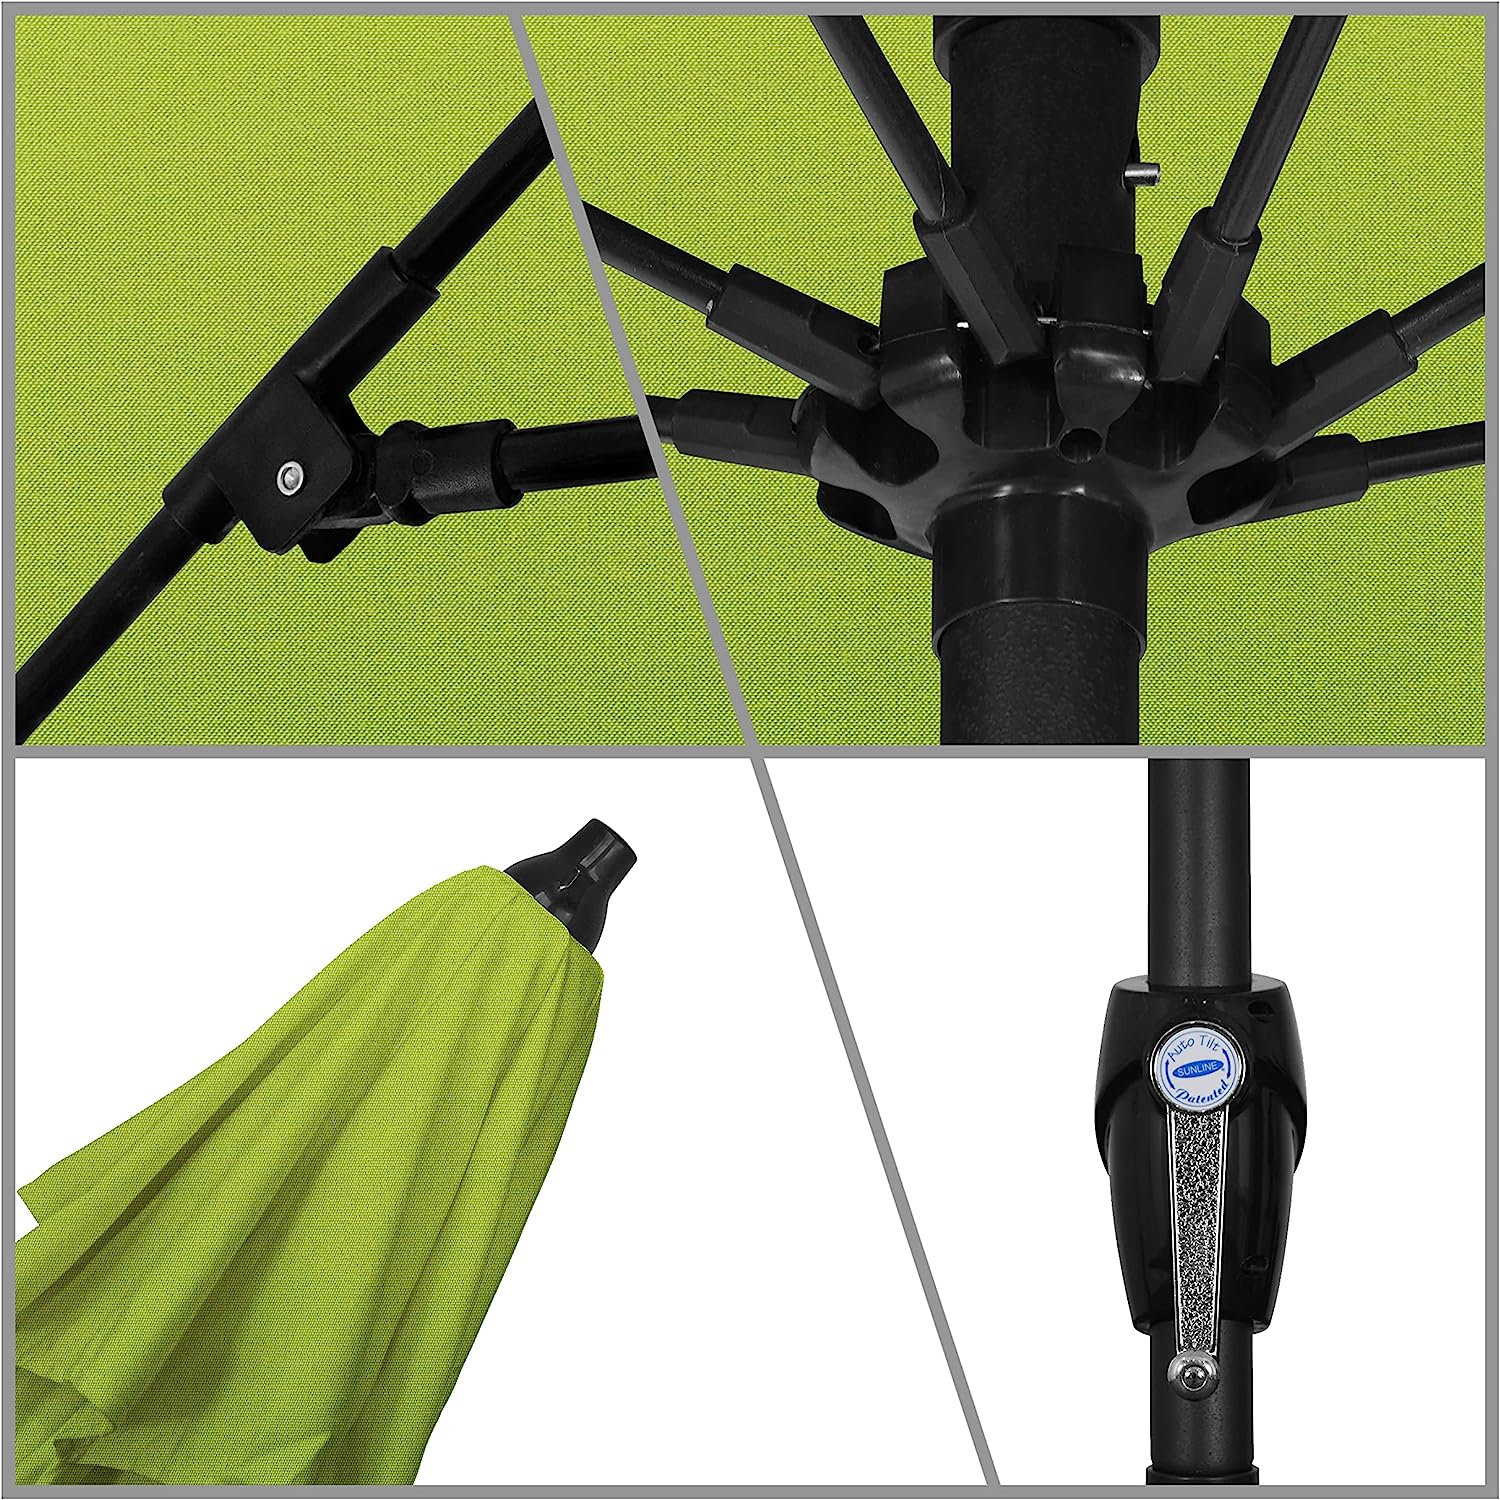 California Umbrella 9 ft. Auto Tilt Crank Lift Patio Umbrella, Macaw Sunbrella - $110